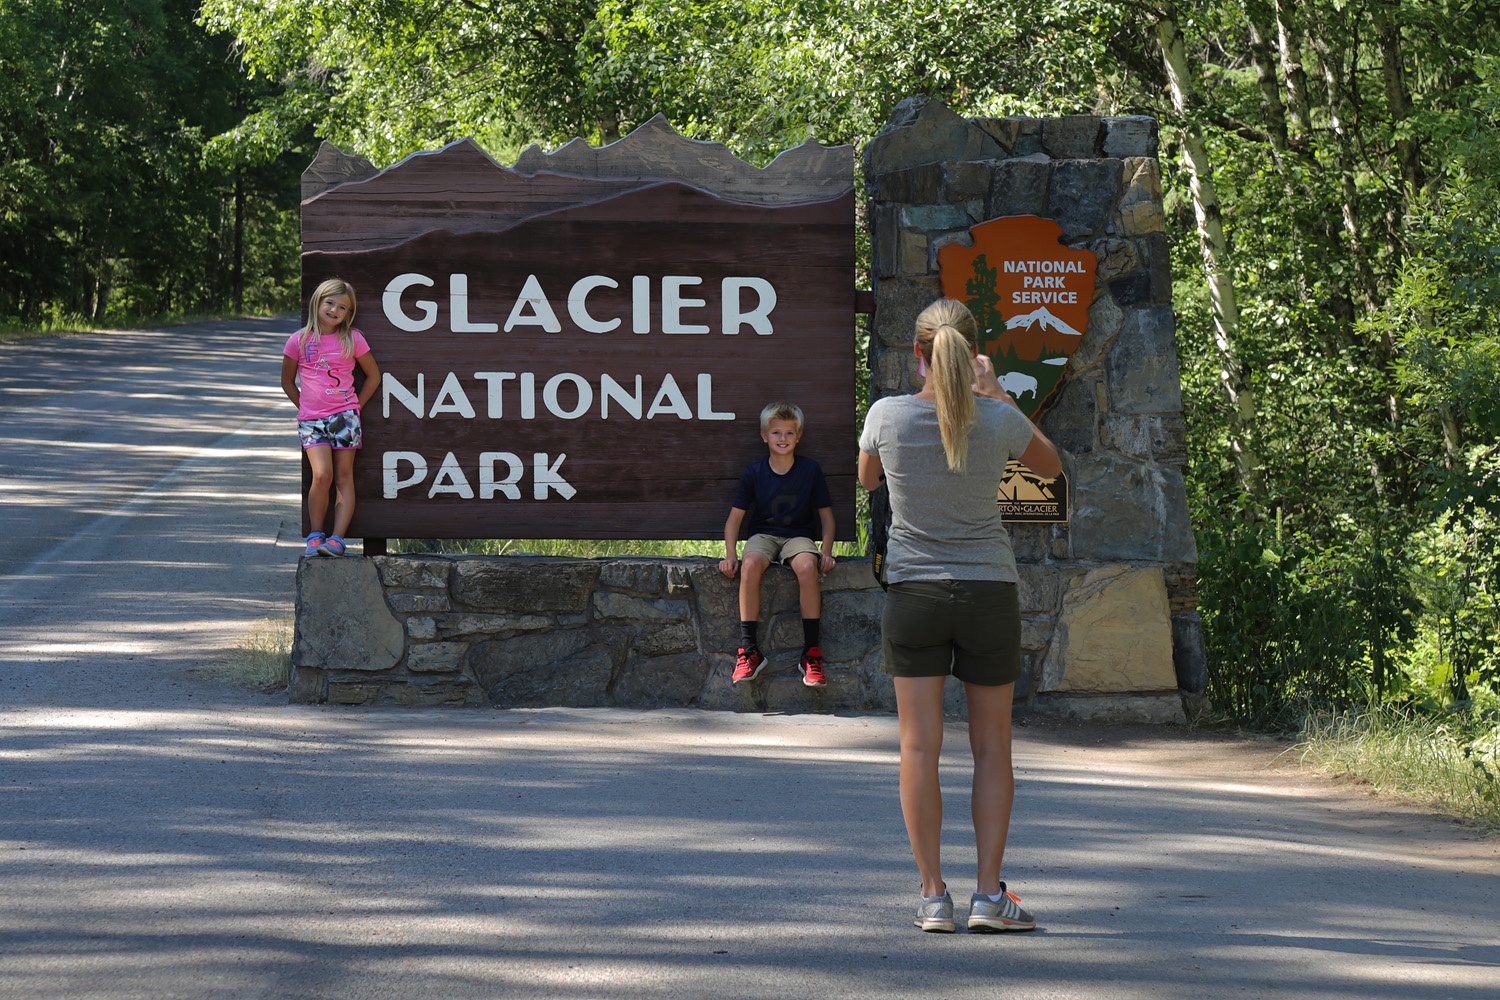 bill-hocker-glacier-national-park-west-glacier-entrance-montana-2017